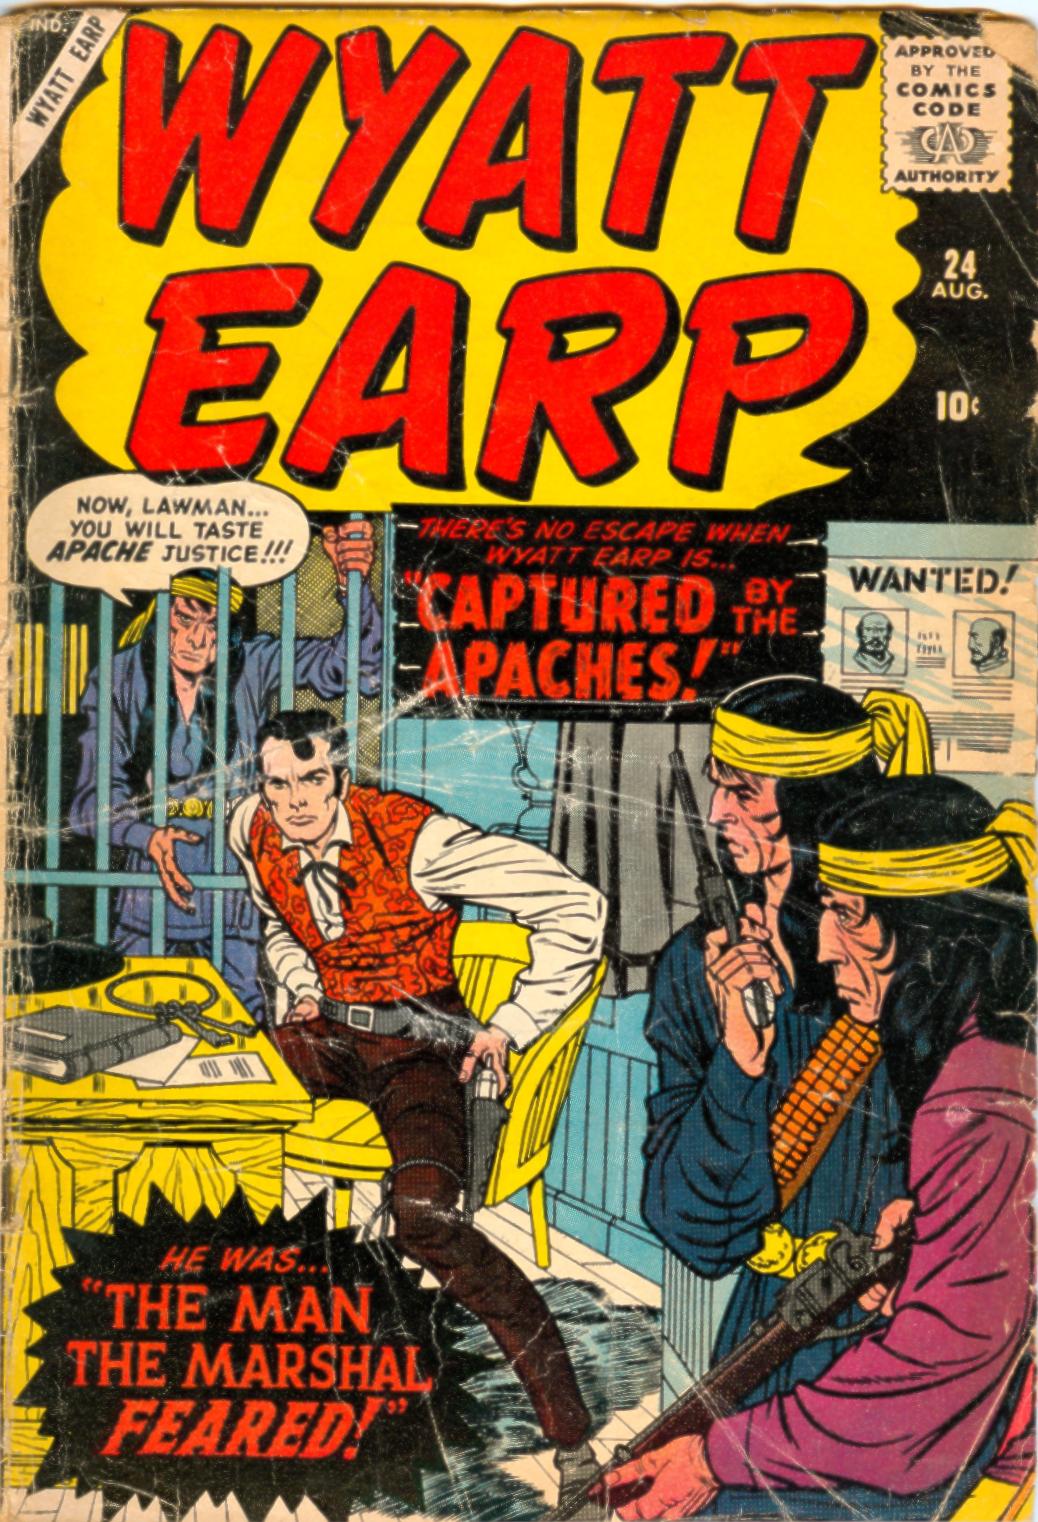 Read online Wyatt Earp comic -  Issue #24 - 1